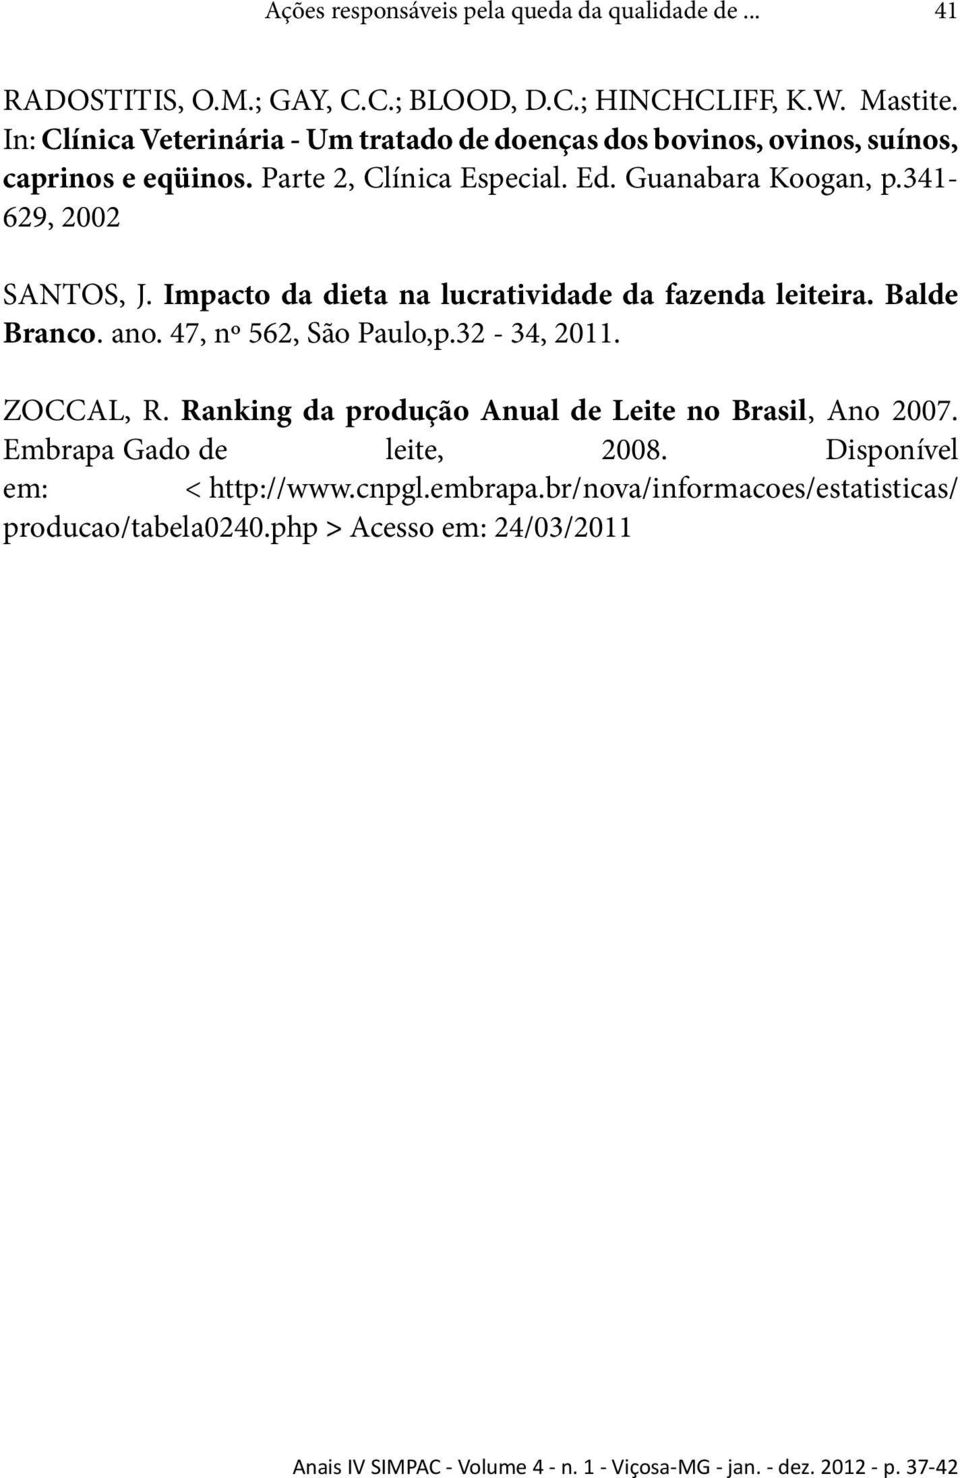 Impacto da dieta na lucratividade da fazenda leiteira. Balde Branco. ano. 47, nº 562, São Paulo,p.32-34, 2011. ZOCCAL, R. Ranking da produção Anual de Leite no Brasil, Ano 2007.